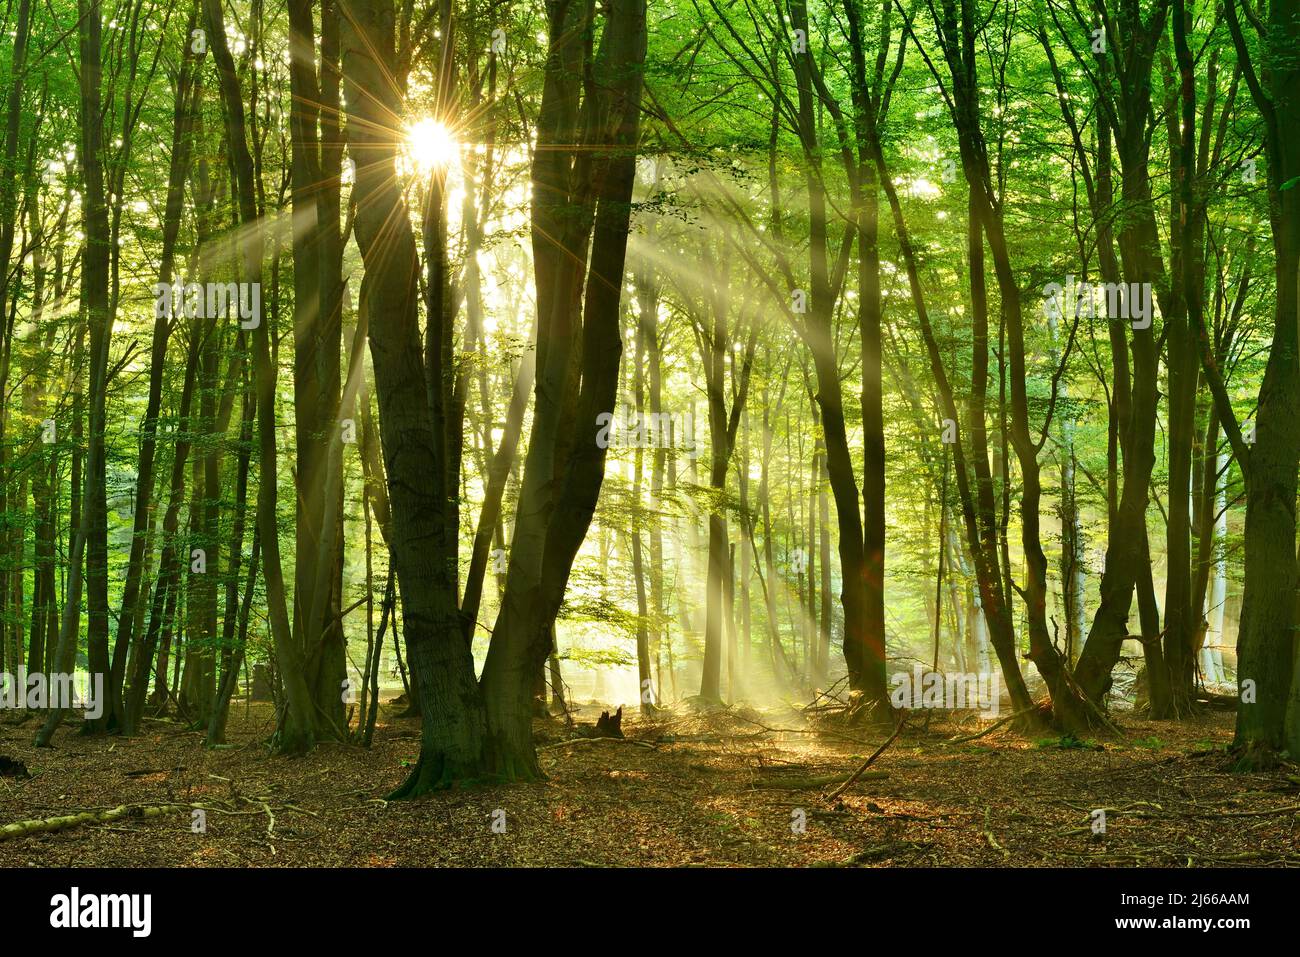 Lichtdurchfluteter unberuehrter Buchenwald am fruehen Morgen, Sonne strahlt durch Nebel, Reinhardswald, Hessen, Deutschland Foto Stock